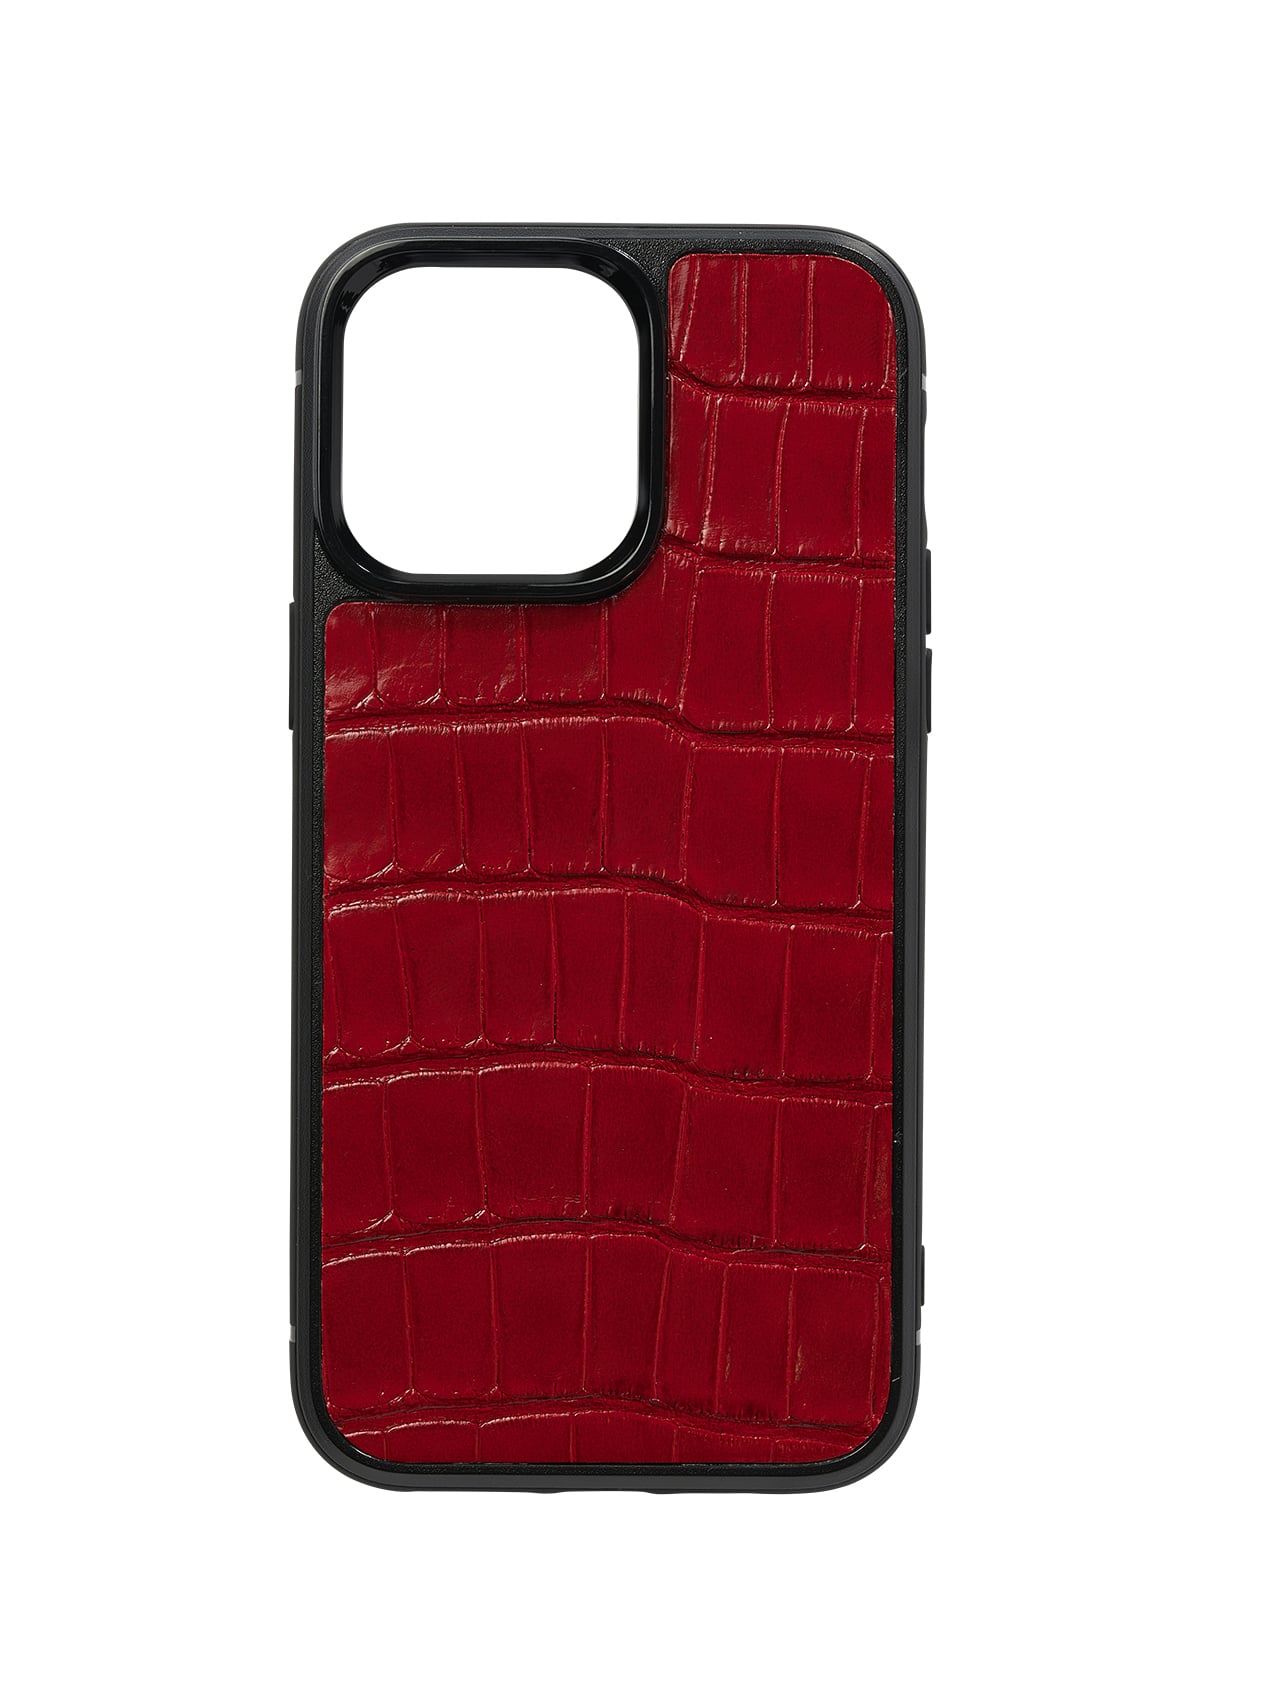 iphone case red 14 pro max alligator